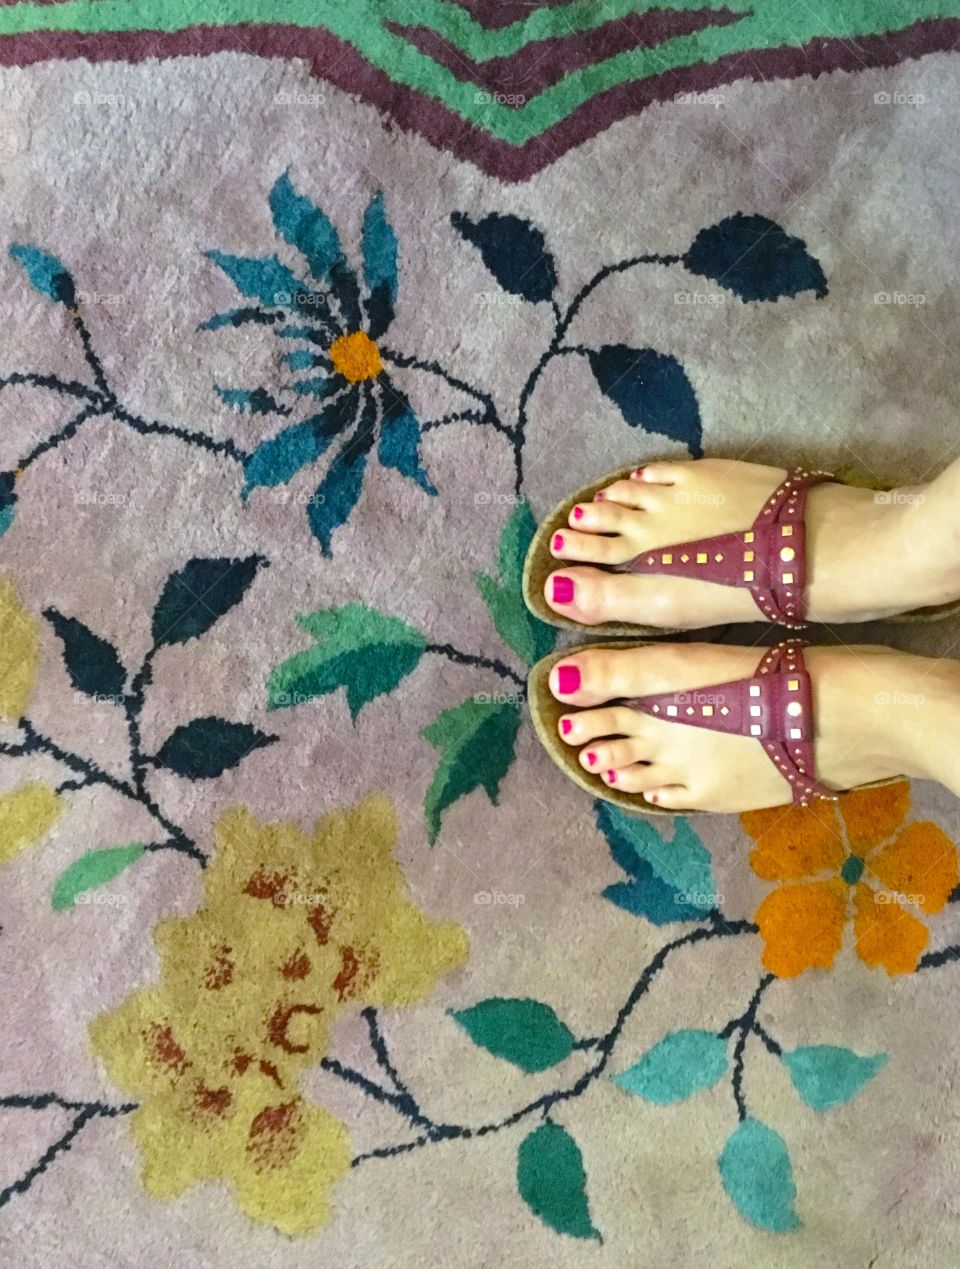 Sandals on floral rug